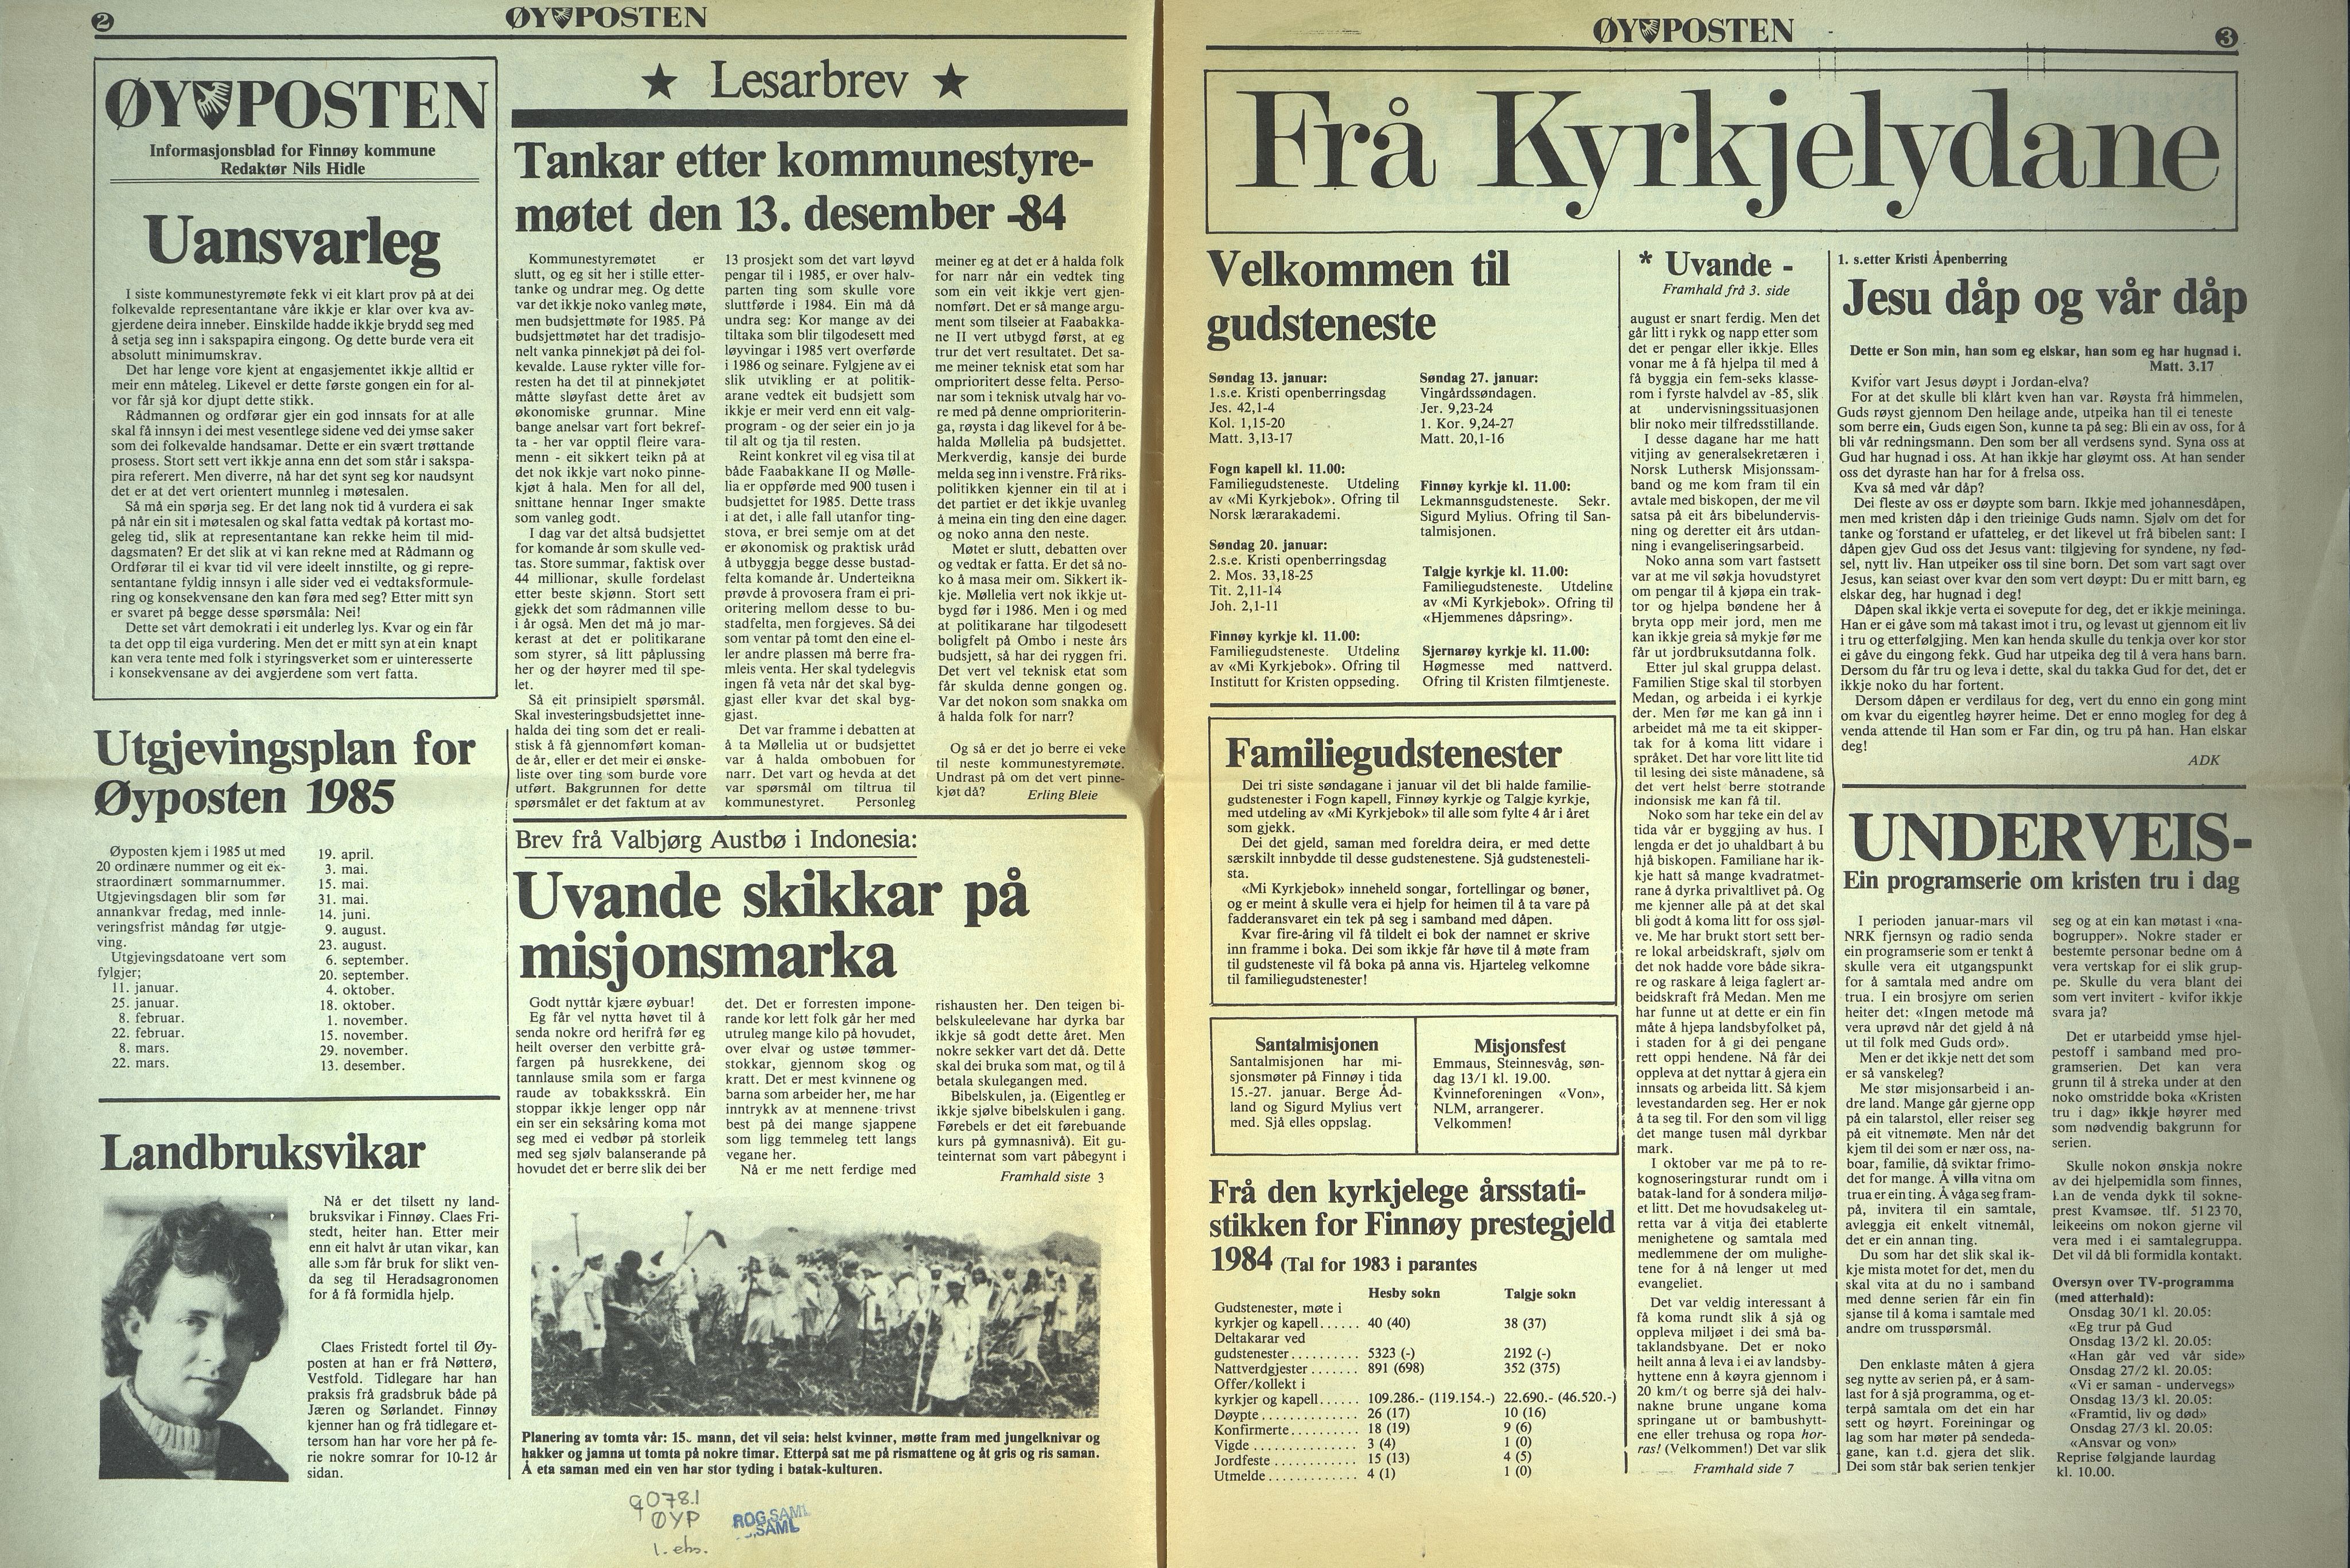 , Finnøy kommune, Øyposten, 1985, 1985